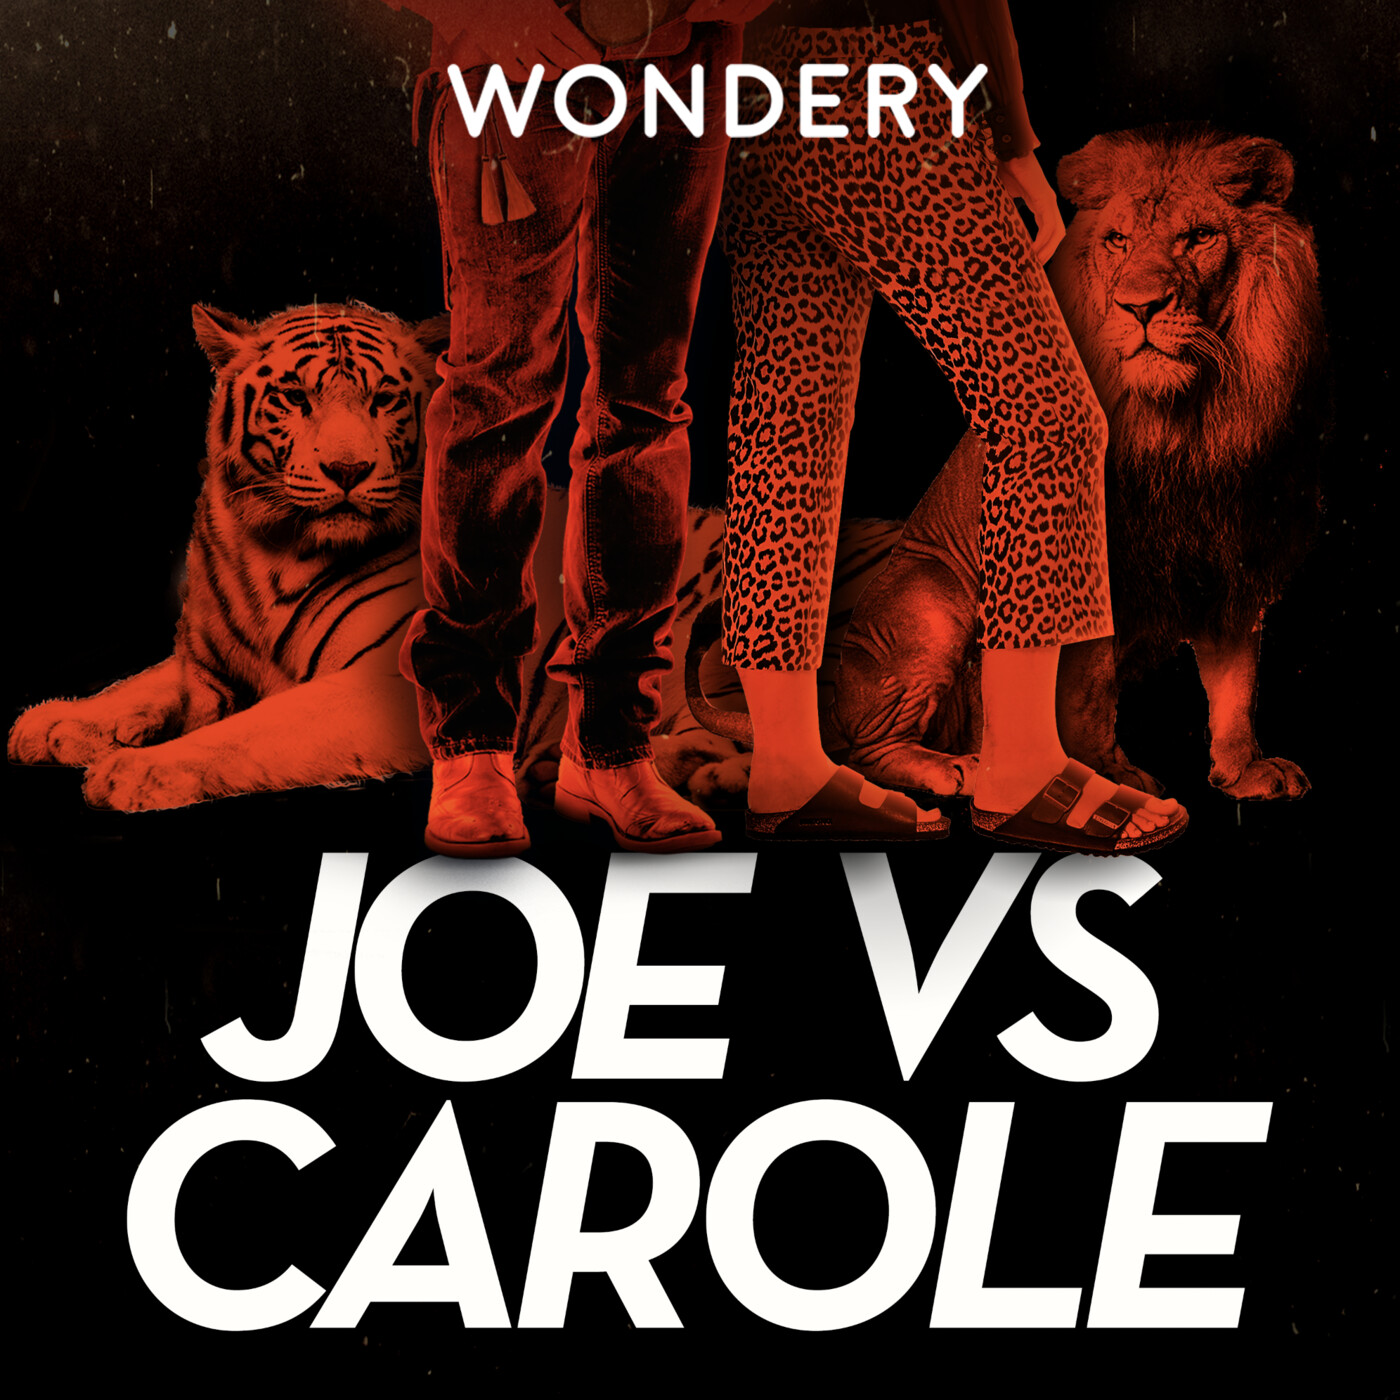 Introducing: Joe vs Carole